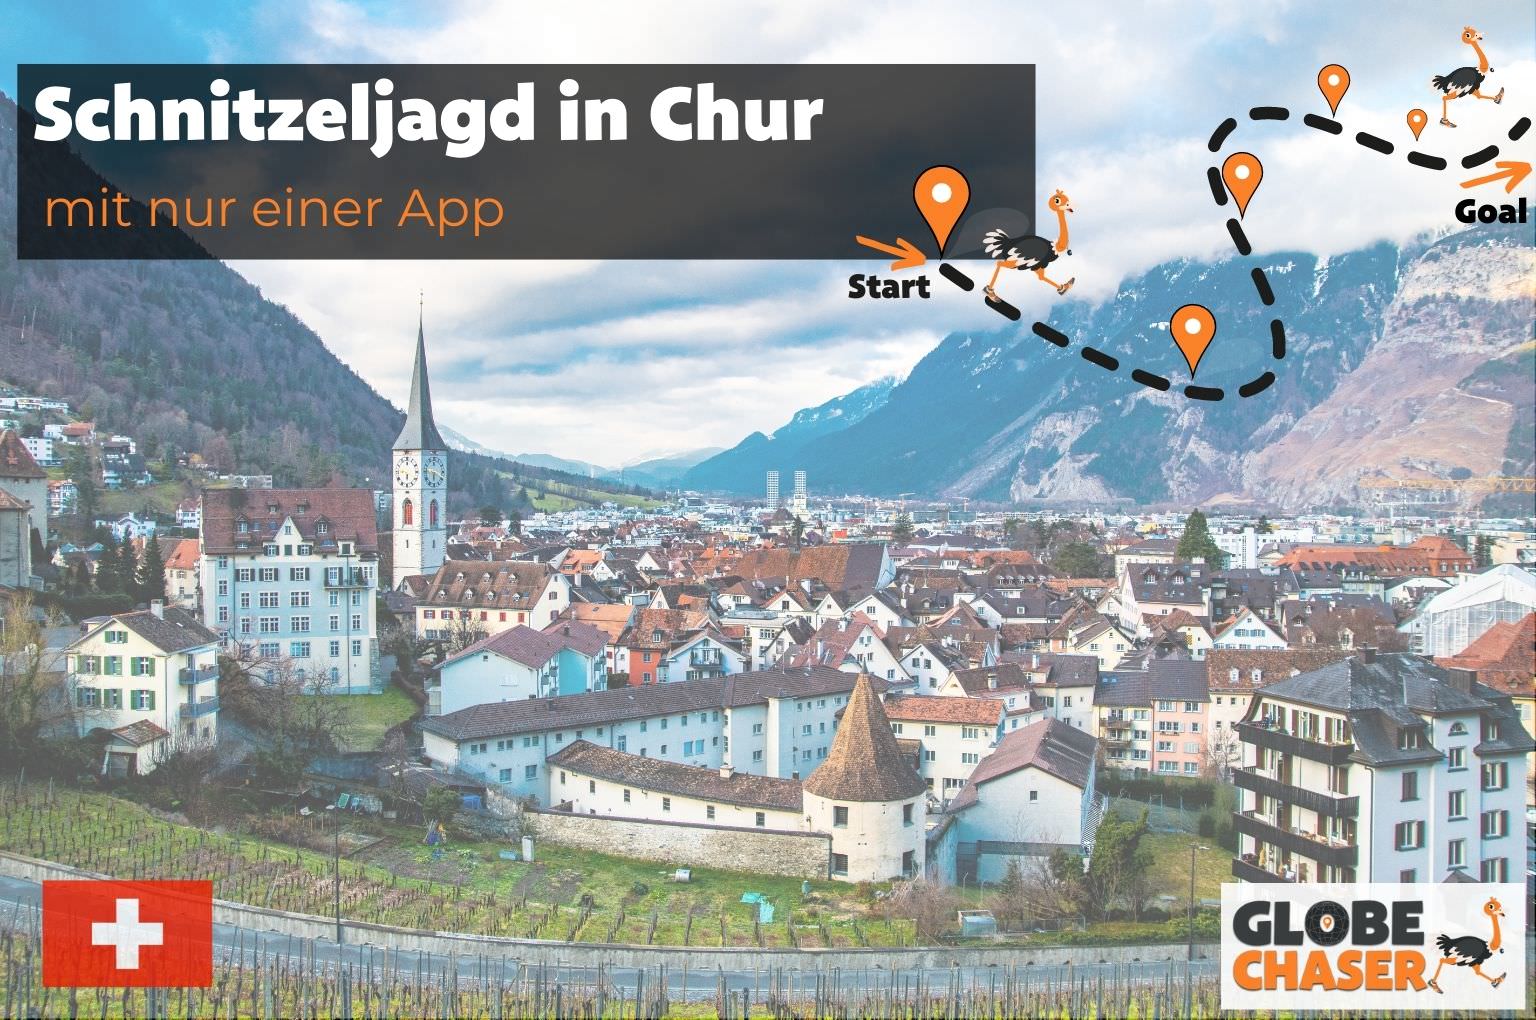 Schnitzeljagd in Chur mit App - Globe Chaser Erlebnisse Schweiz